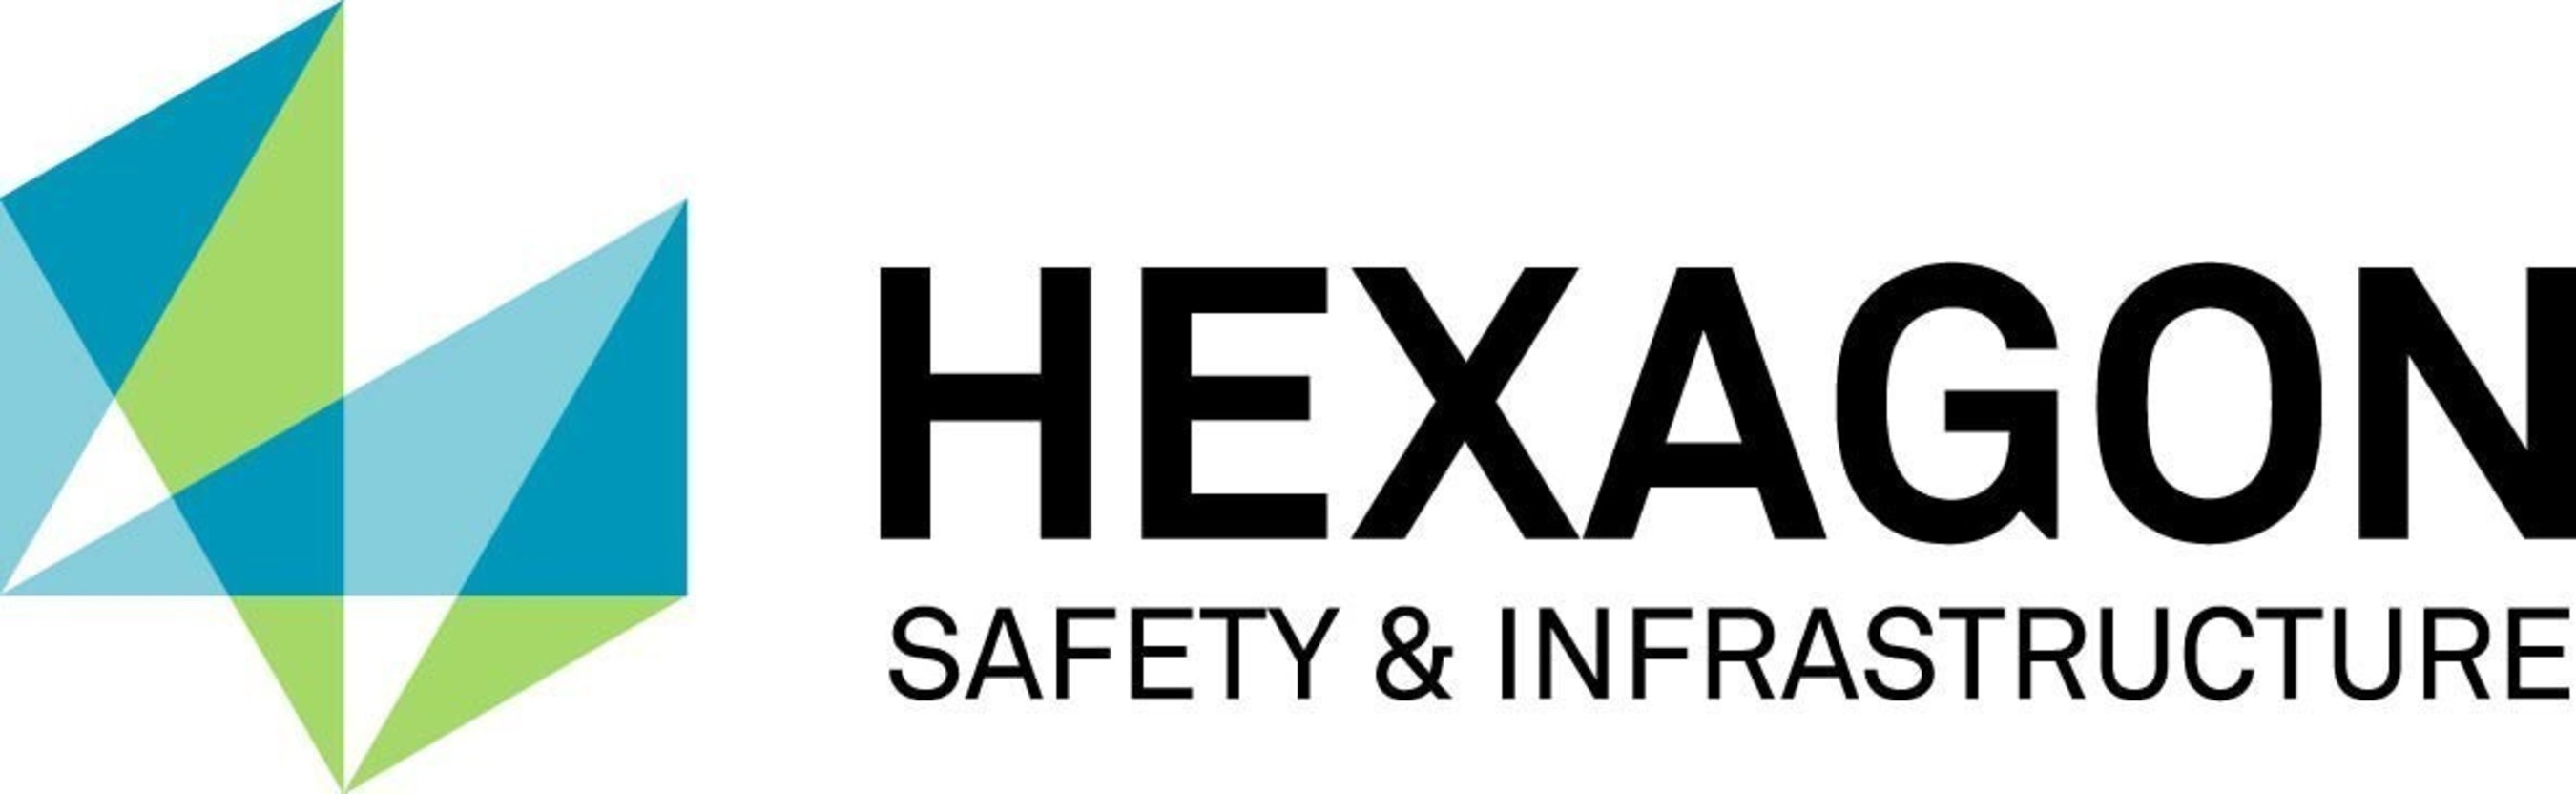 Hexagon Safety & Infrastructure Logo.